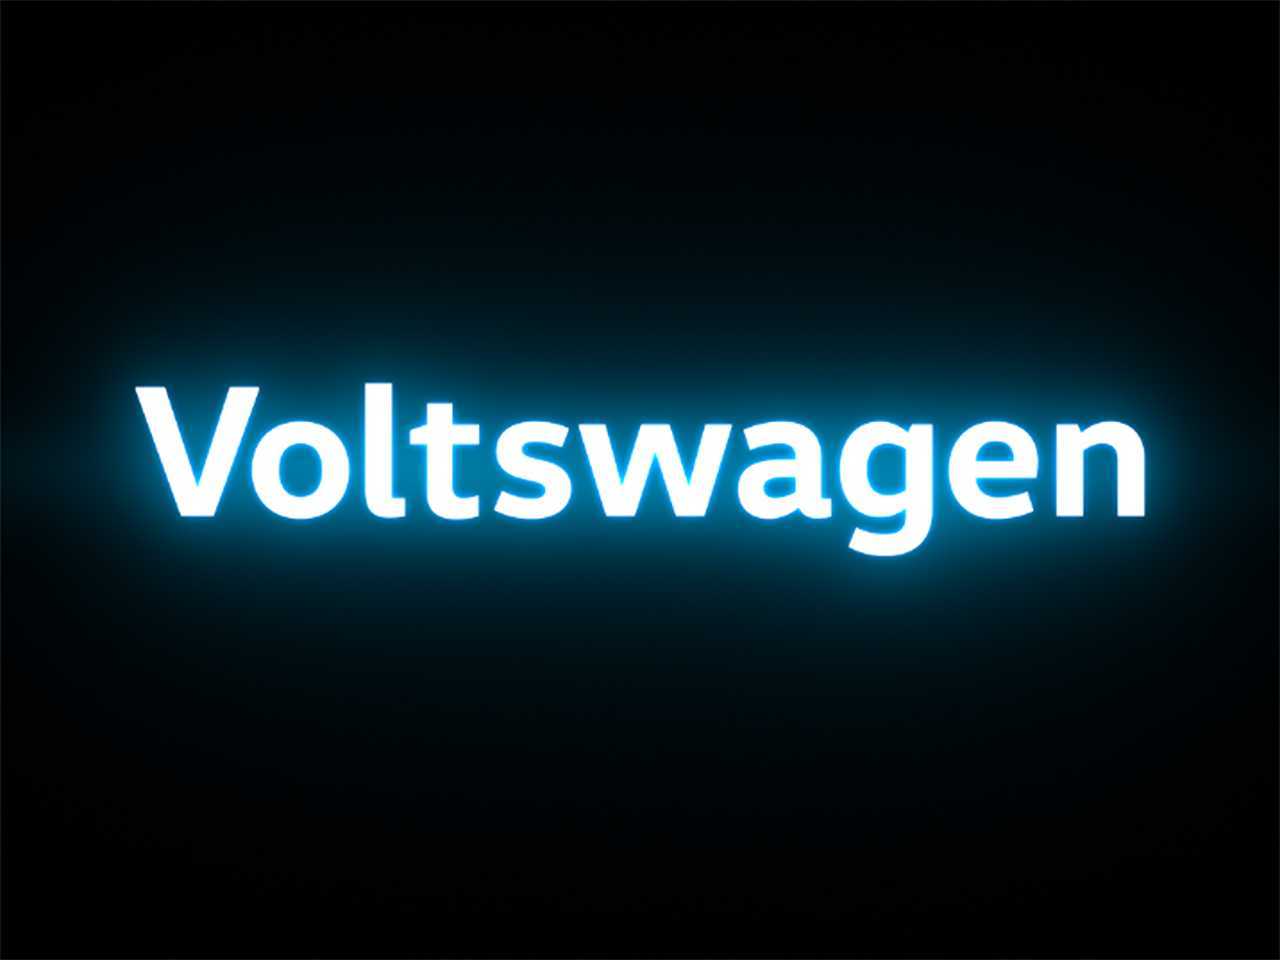 Detalhe da identificao visual da Voltswagen nos EUA